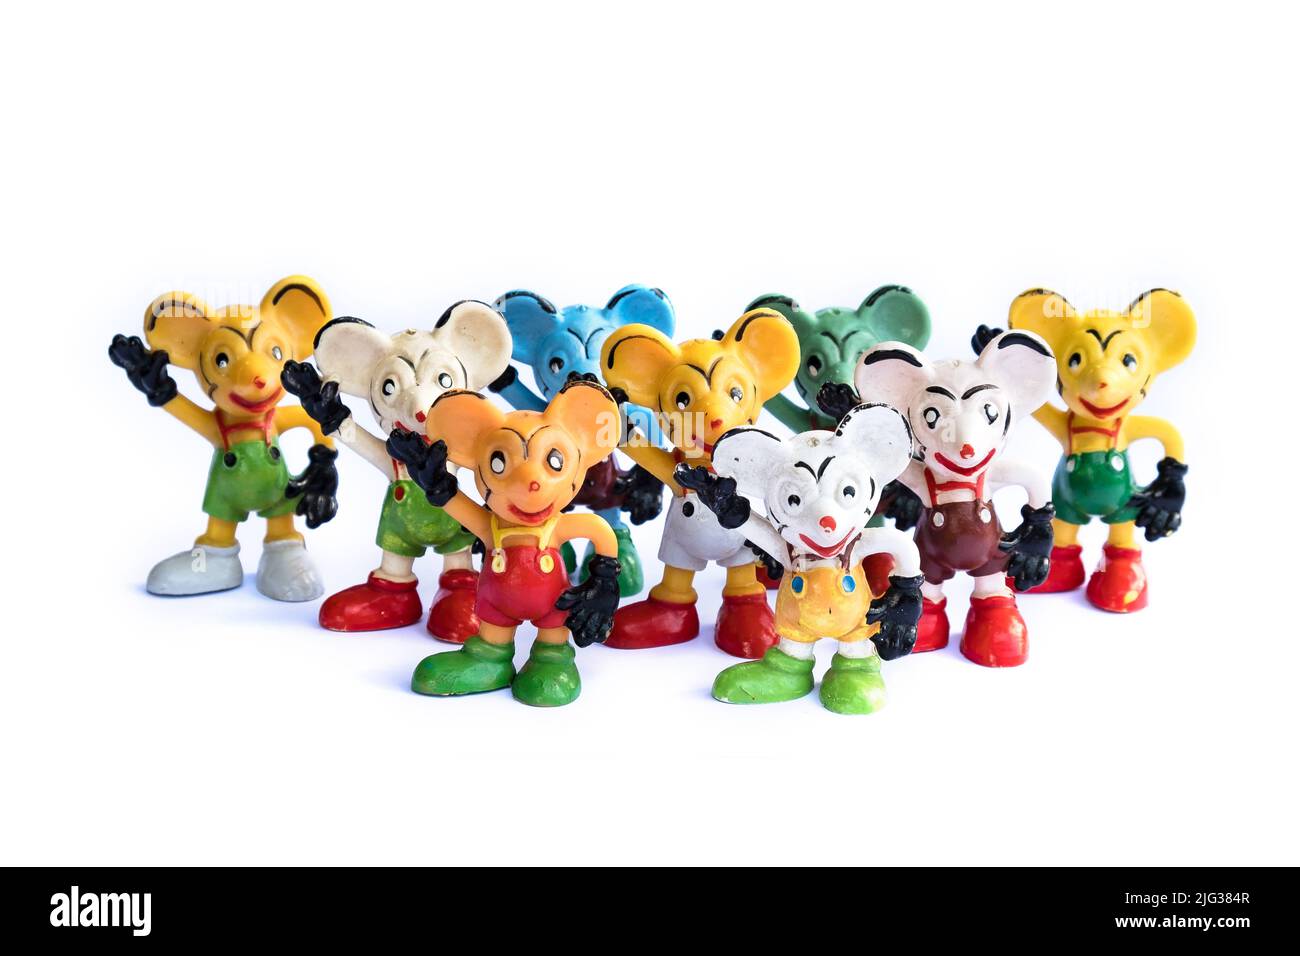 DDR-Version von Mickey Mouse. Altes Maus-Gummispielzeug ohne Marke. Bunte Retro-Mäusefiguren. Beliebtes sowjetisches Vintage-Spielzeug aus den Jahren 70s & 80s. Stockfoto